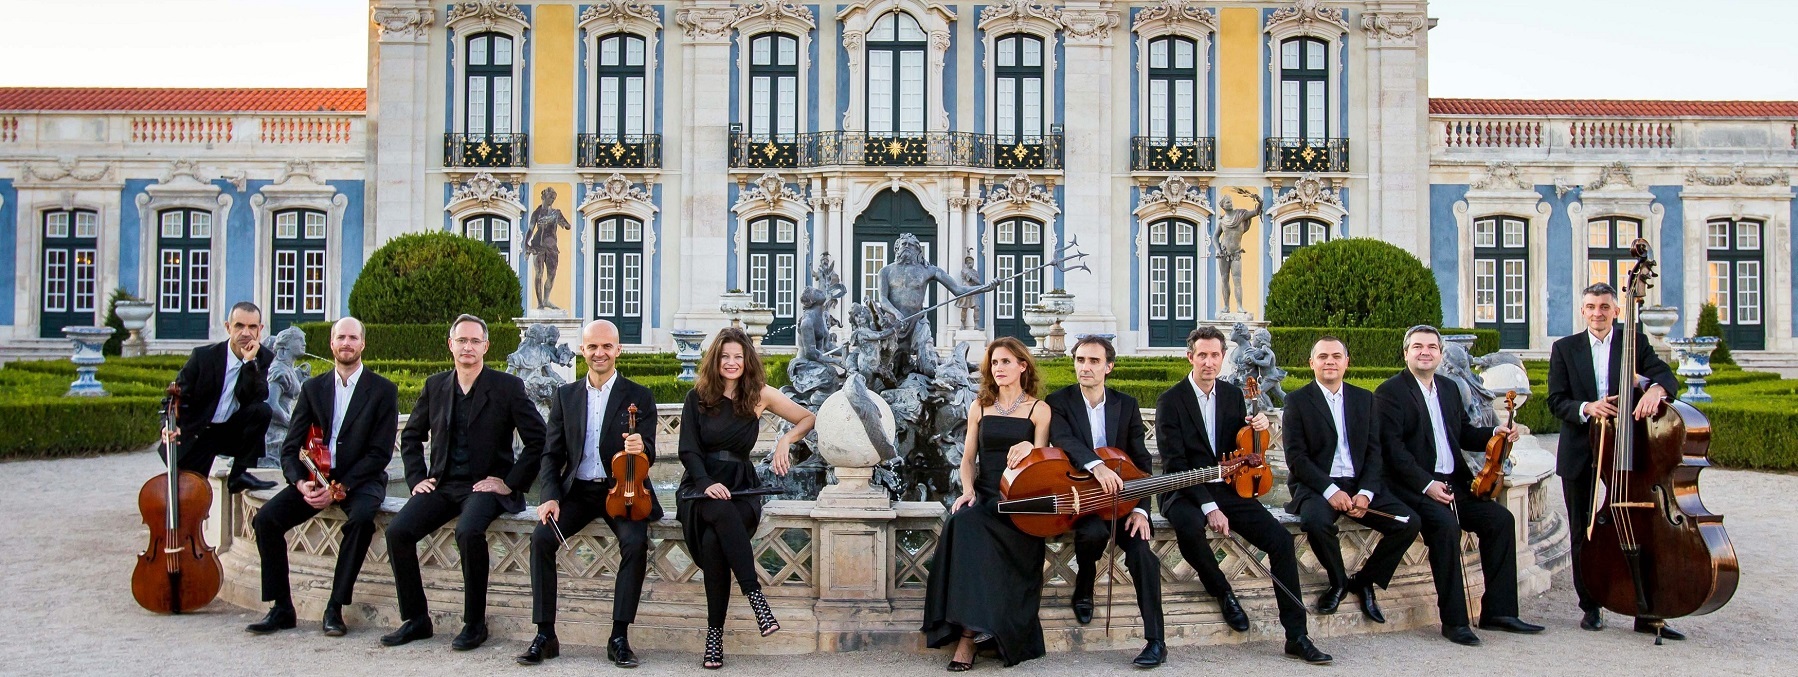 Verona per un mese sarà la capitale della musica barocca. Tradizione e innovazione, per un pubblico e luoghi inediti